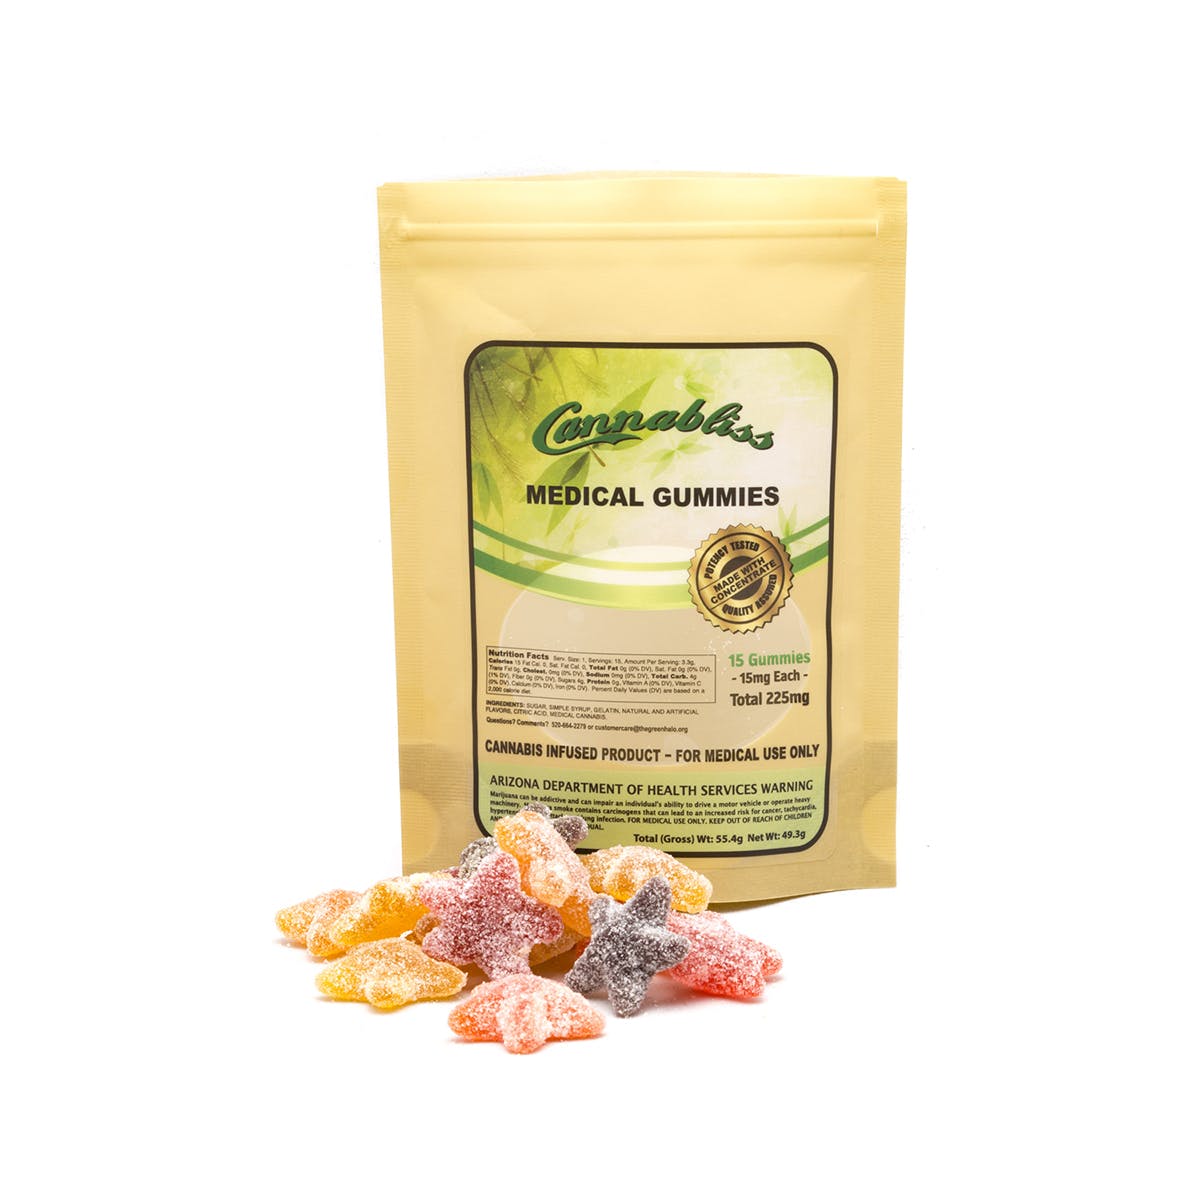 edible-cannabliss-arizona-medical-gummies-225mg